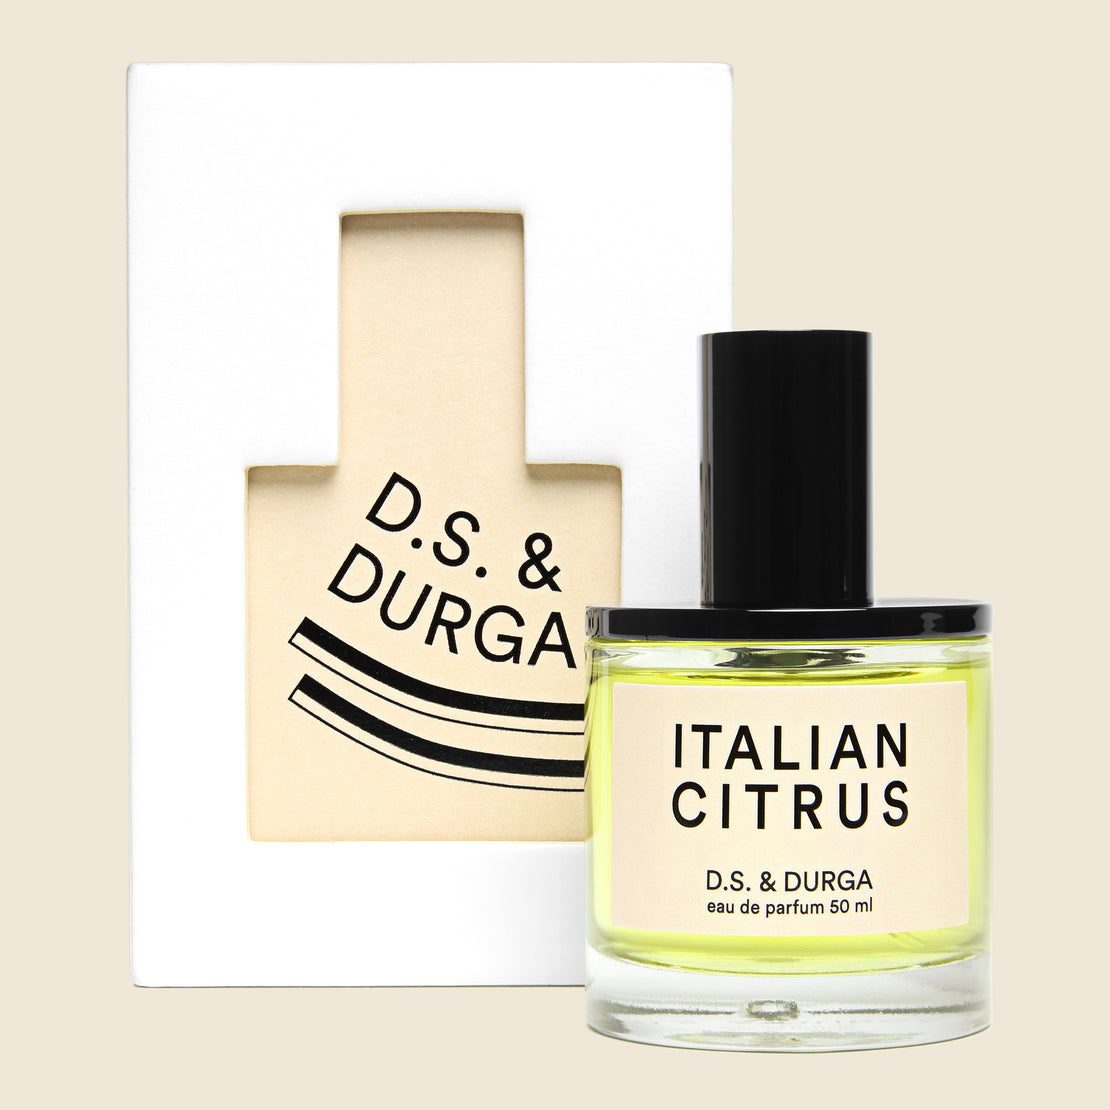 D.S. & Durga Perfume - Italian Citrus